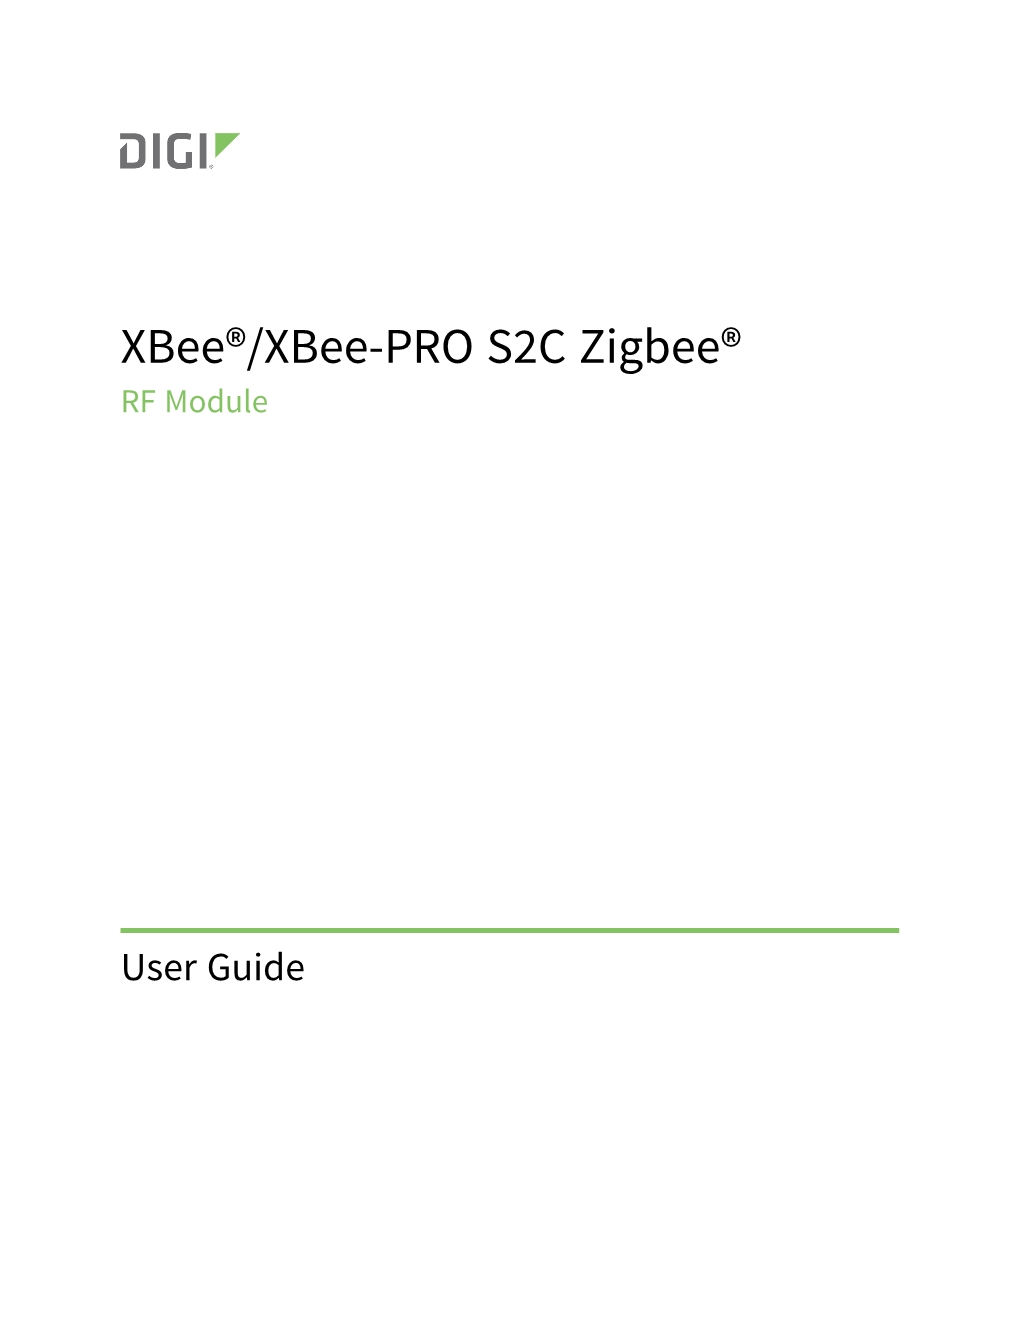 Xbee/Xbee-PRO® S2C Zigbee® RF Module